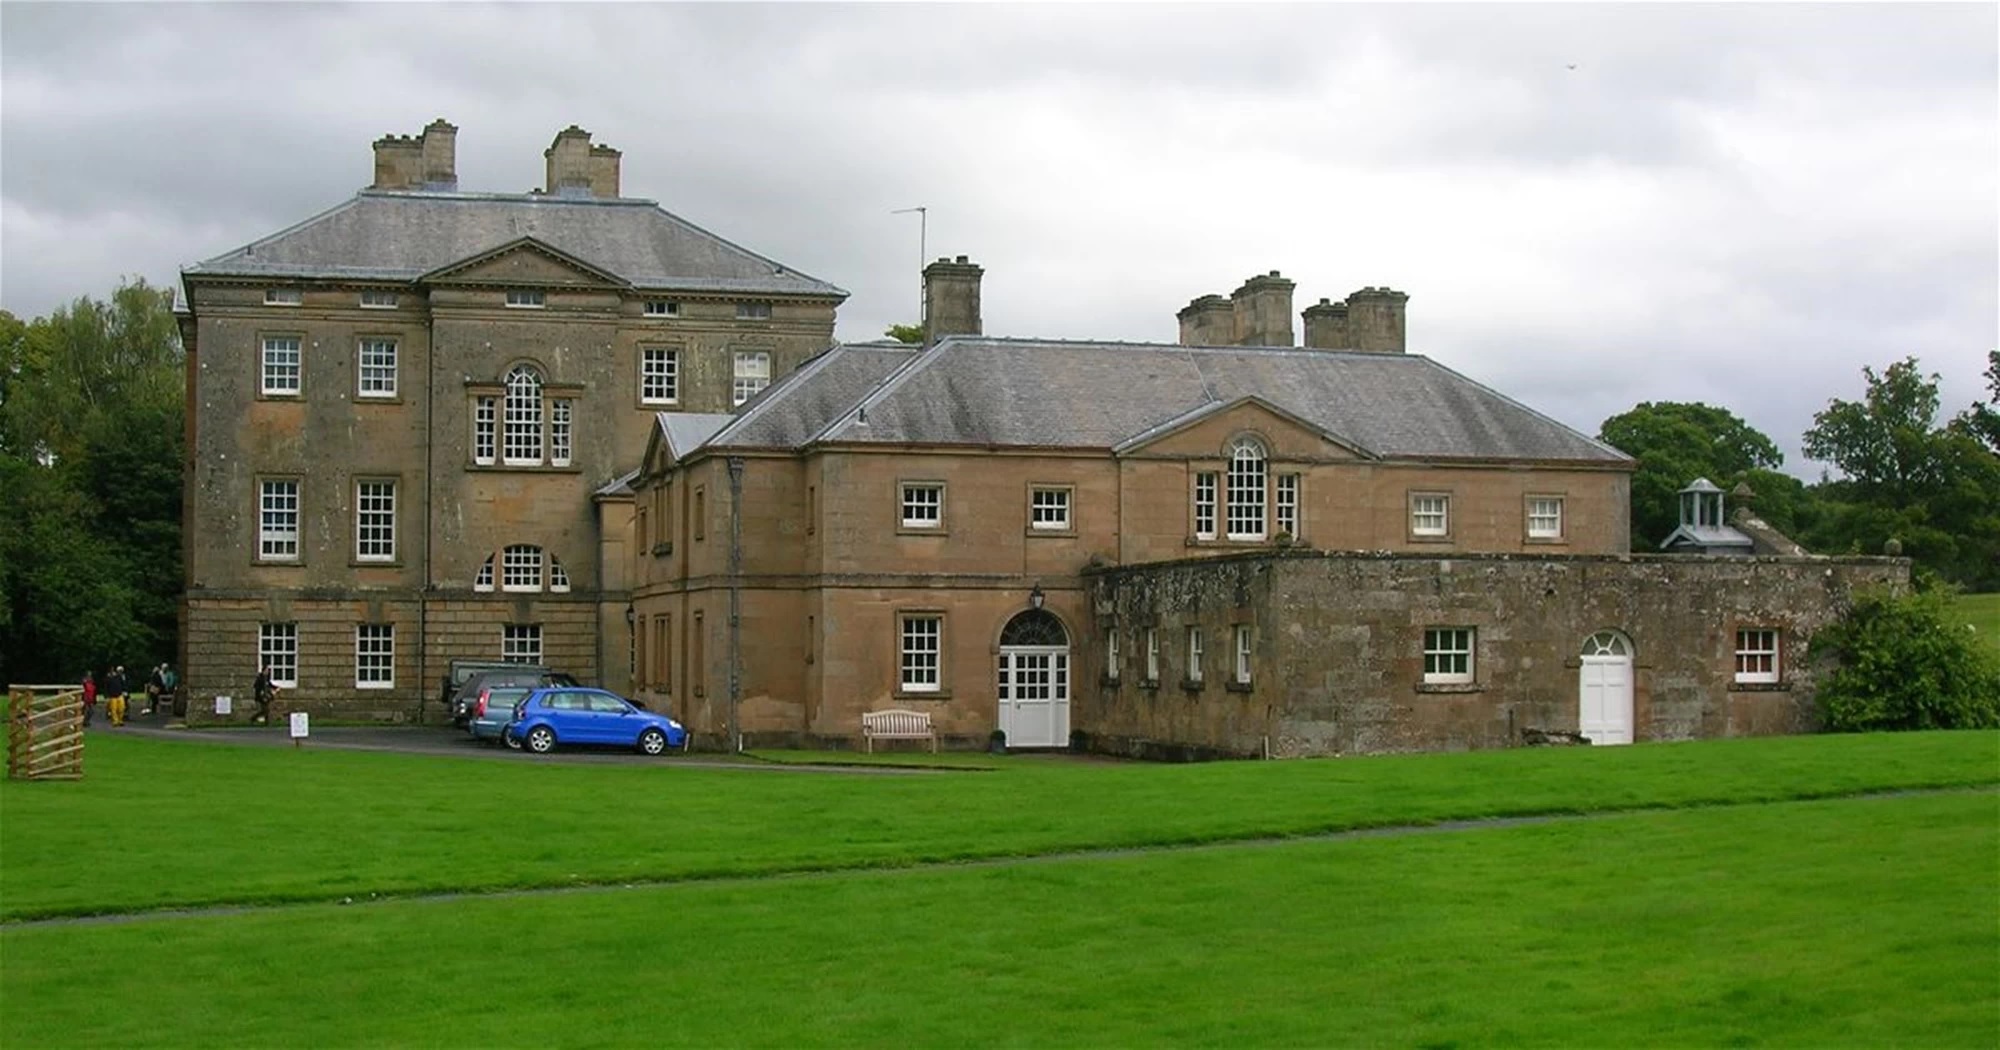 Dumfries House: Η ιστορία πίσω από το επιβλητικό αρχοντικό της Σκωτίας που θα αποτελέσει πρότυπο για την ανάπλαση του Τατοΐου